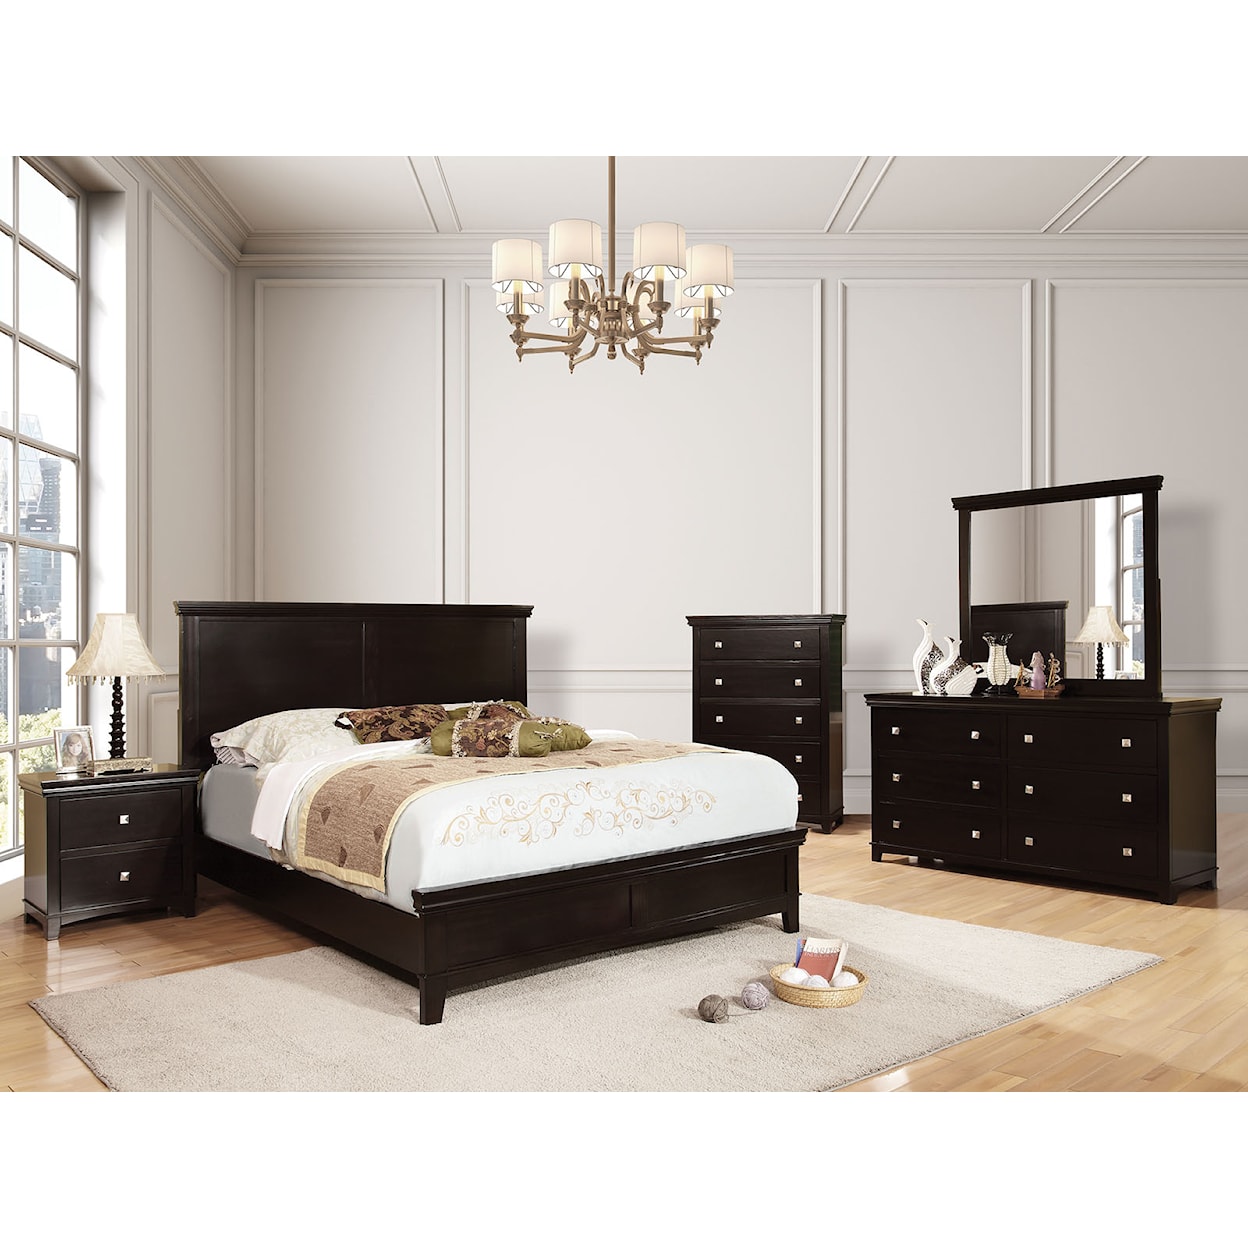 FUSA Spruce Queen Bedroom Set